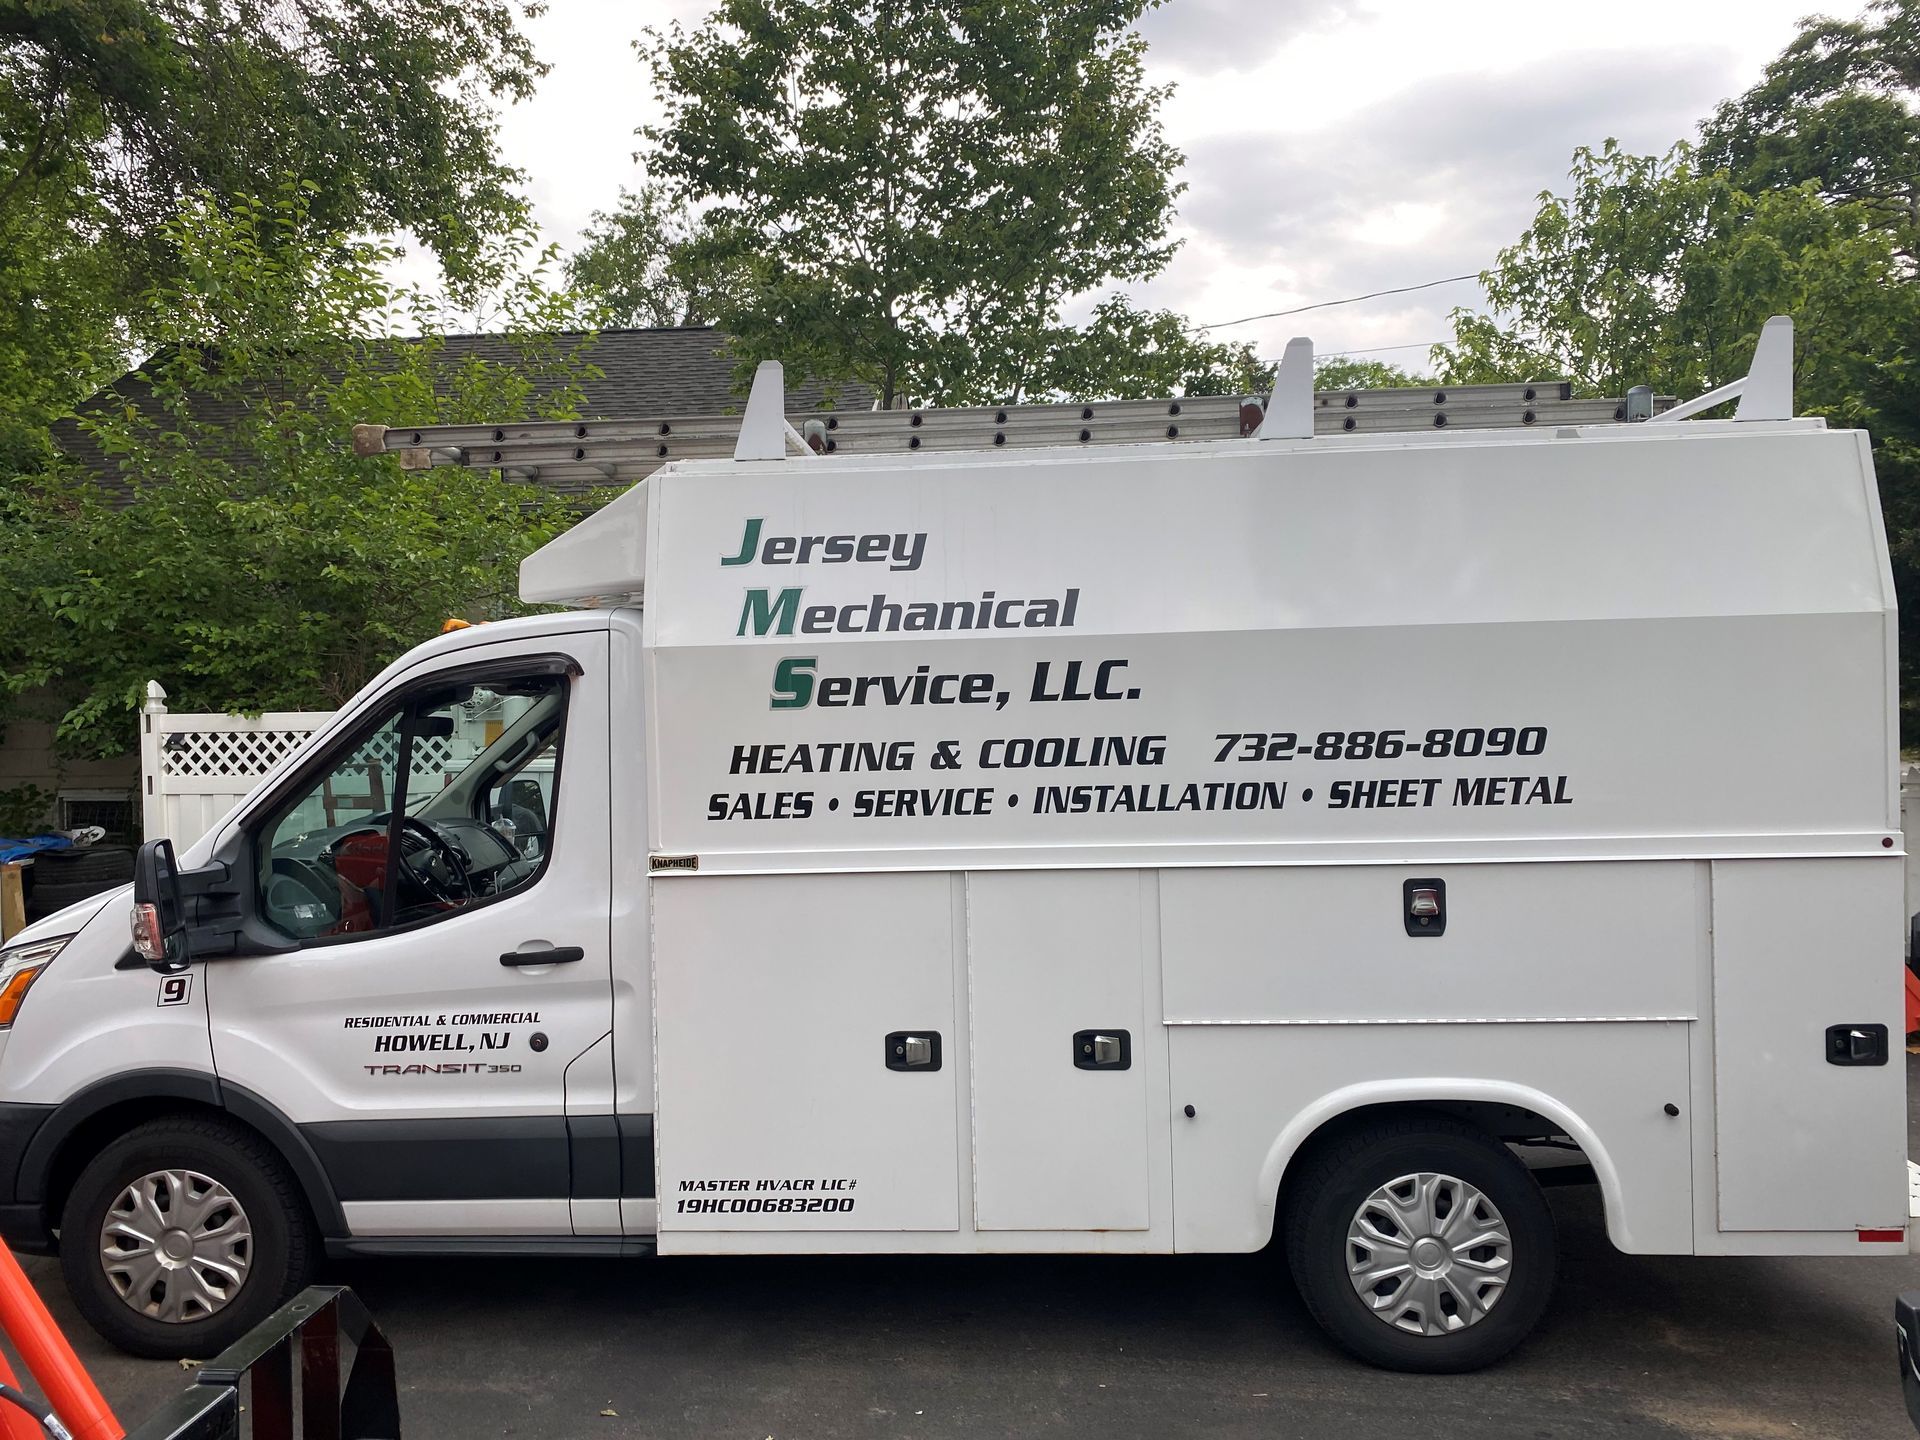 Jersey Mechanical Service LLC Truck